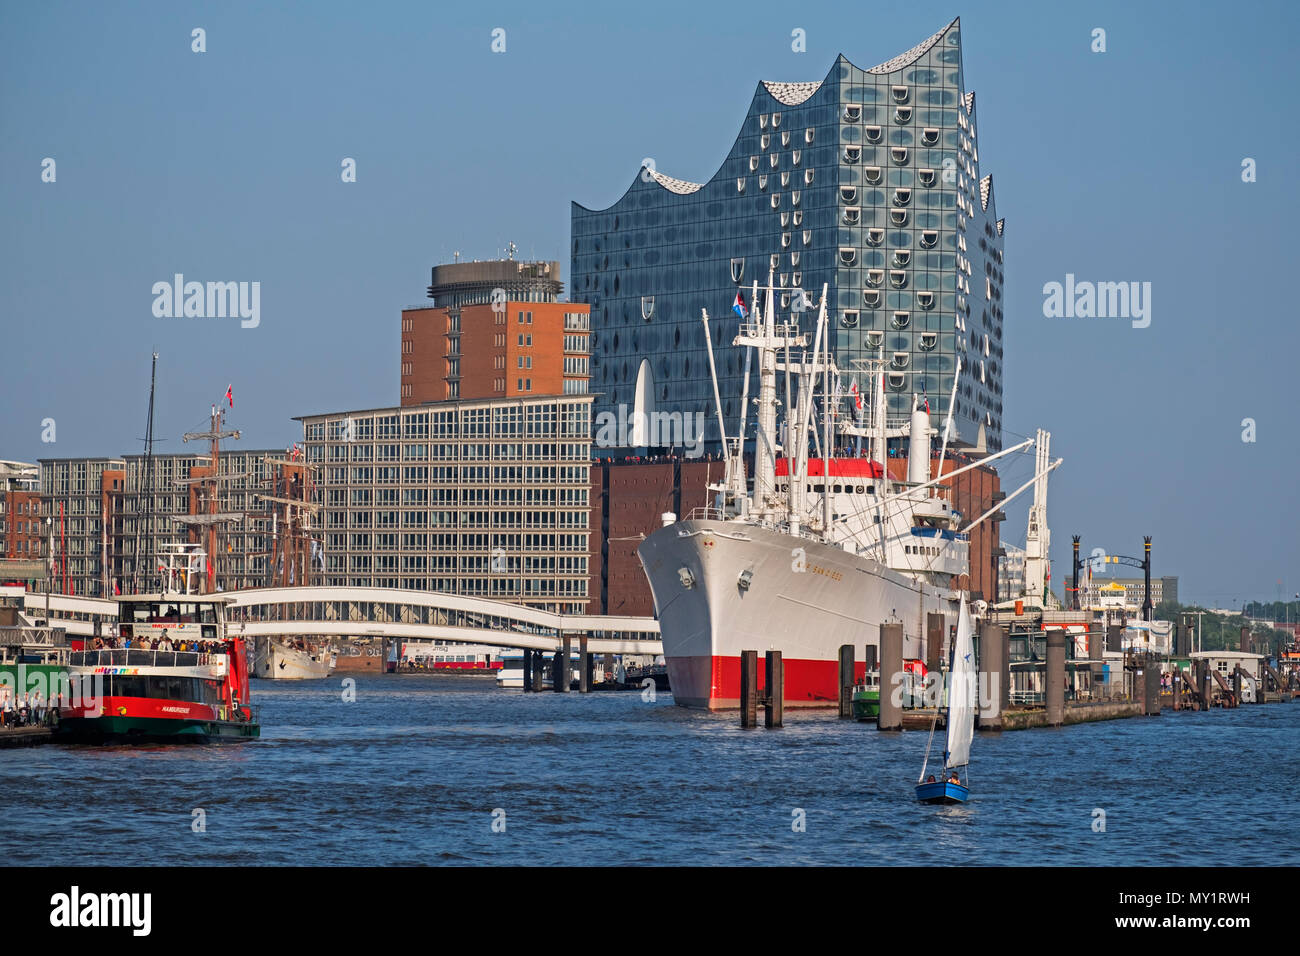 Elbphilharmonie Concert Hall y el Cap San Diego barco museo en Hamburgo, Alemania Foto de stock